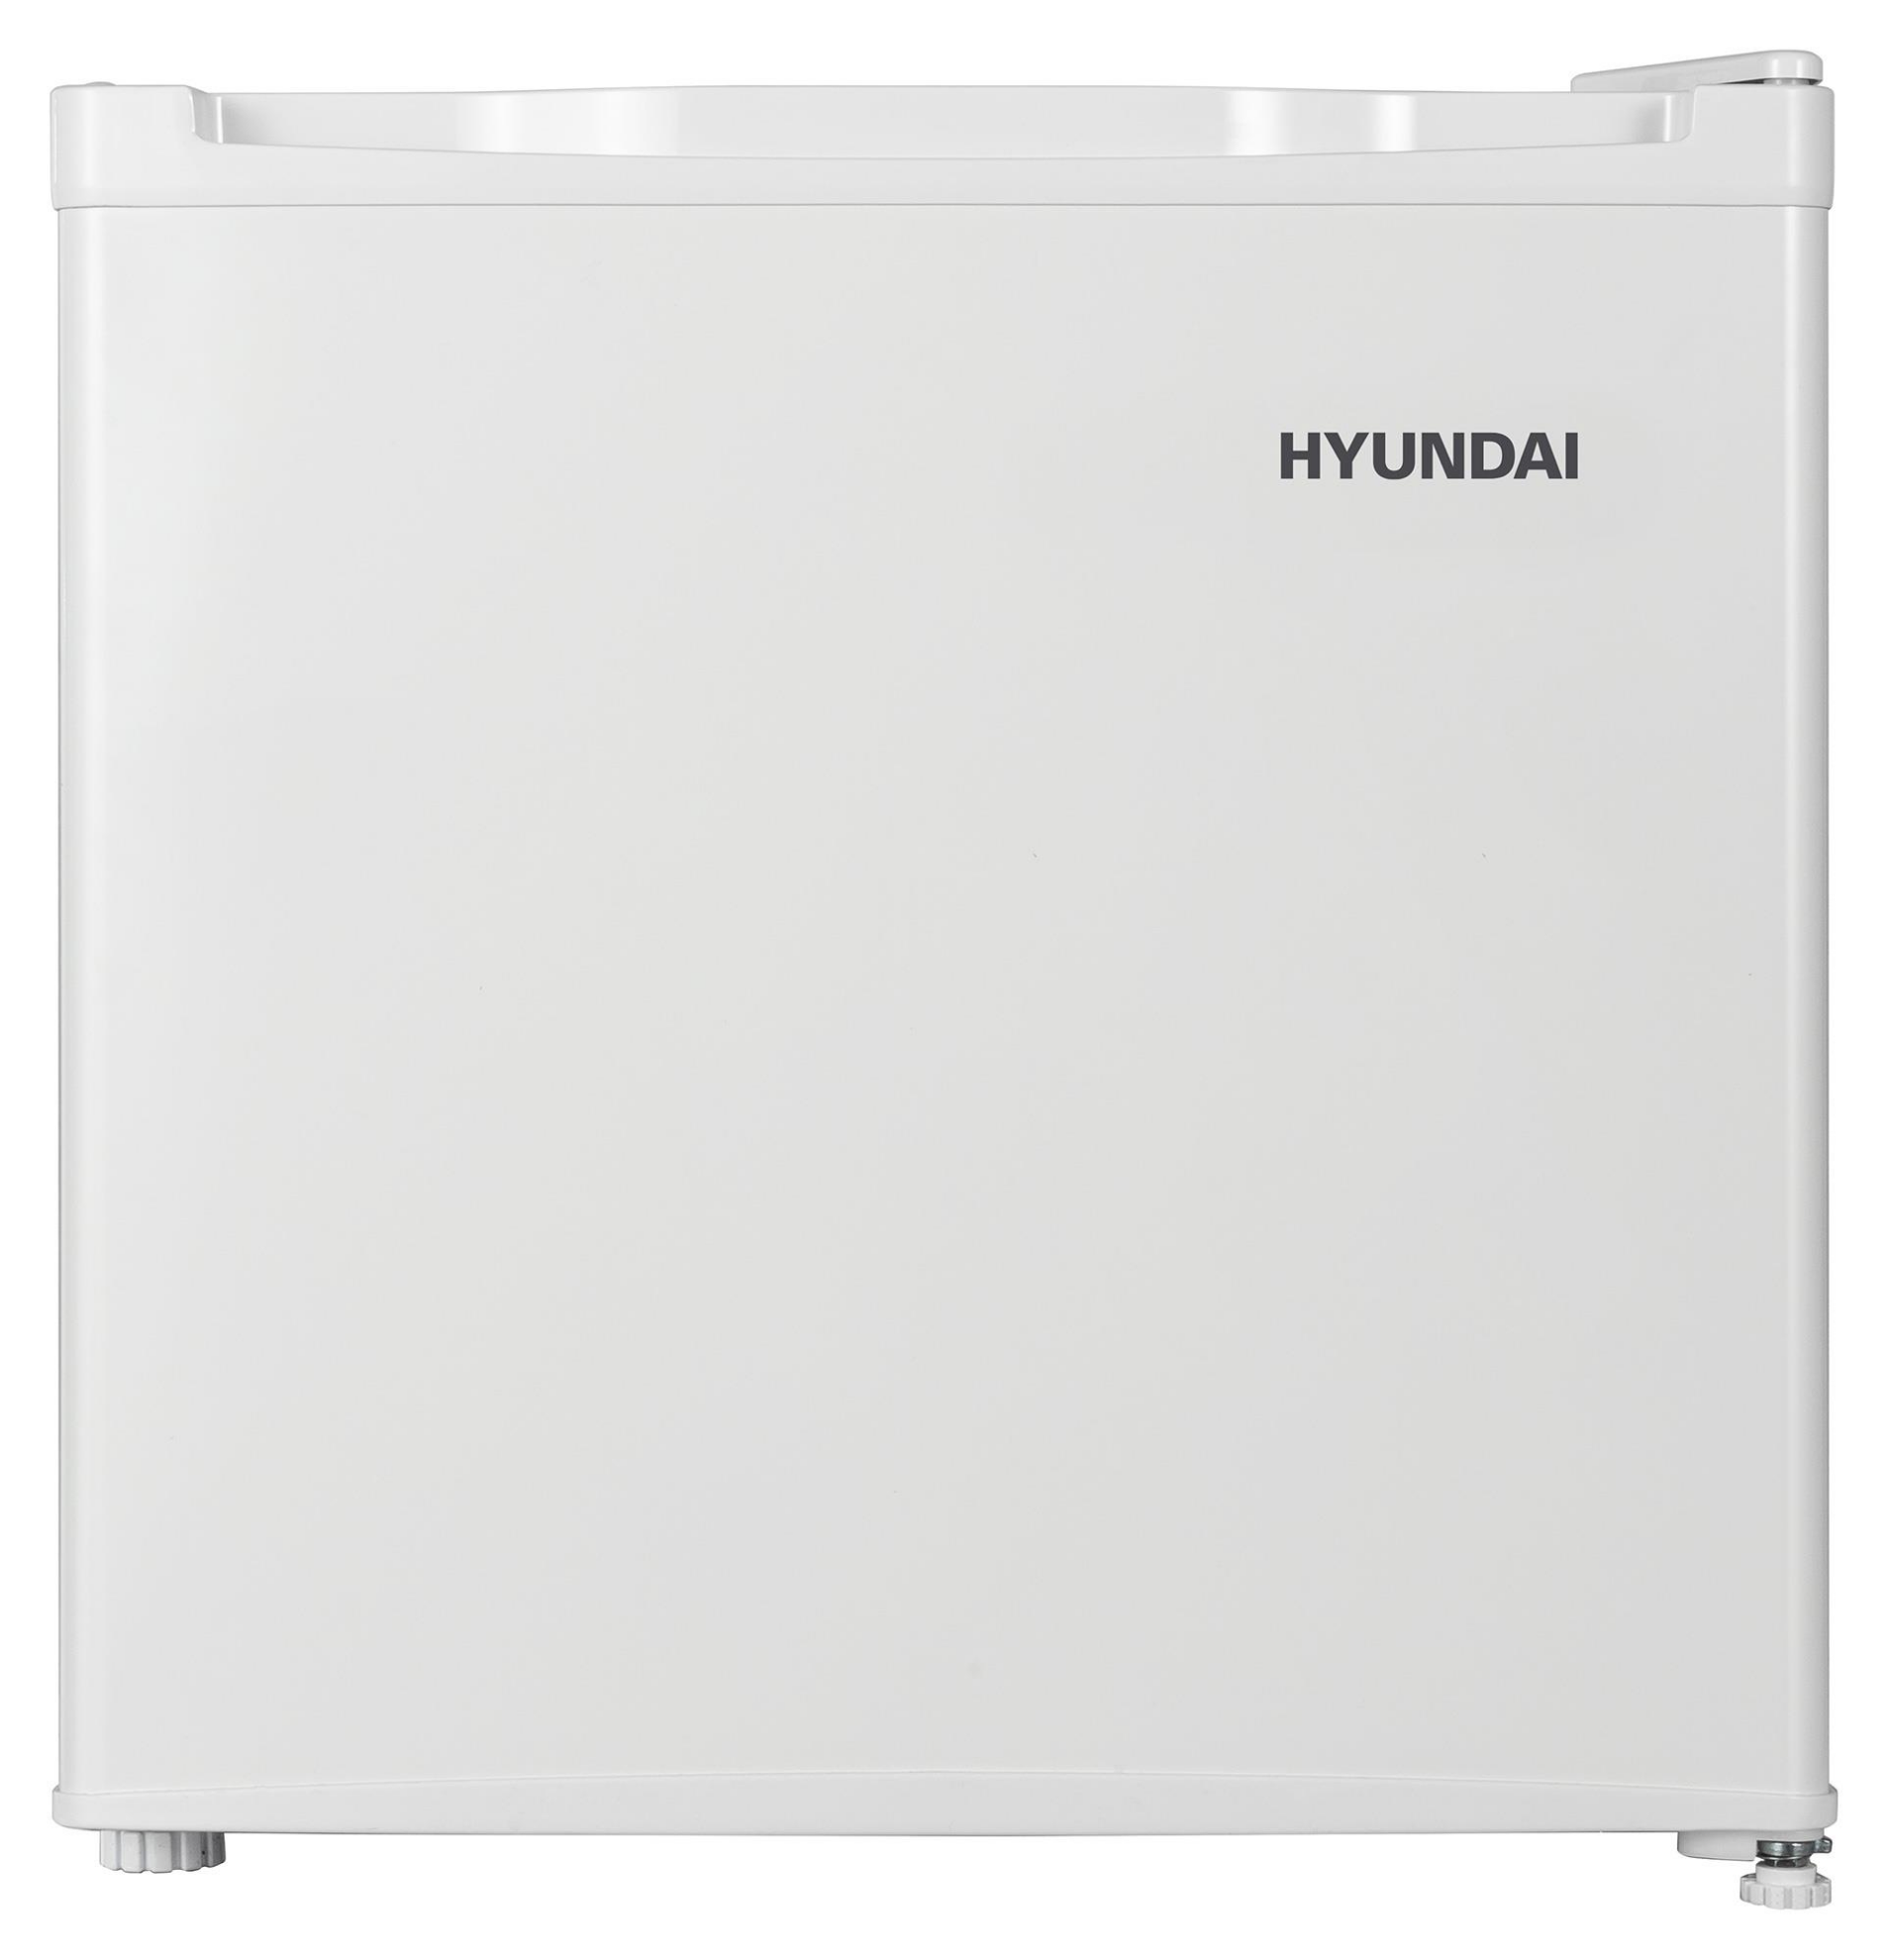 Изображение Холодильник Hyundai CO0542WT белый (A+,106 кВтч/год)